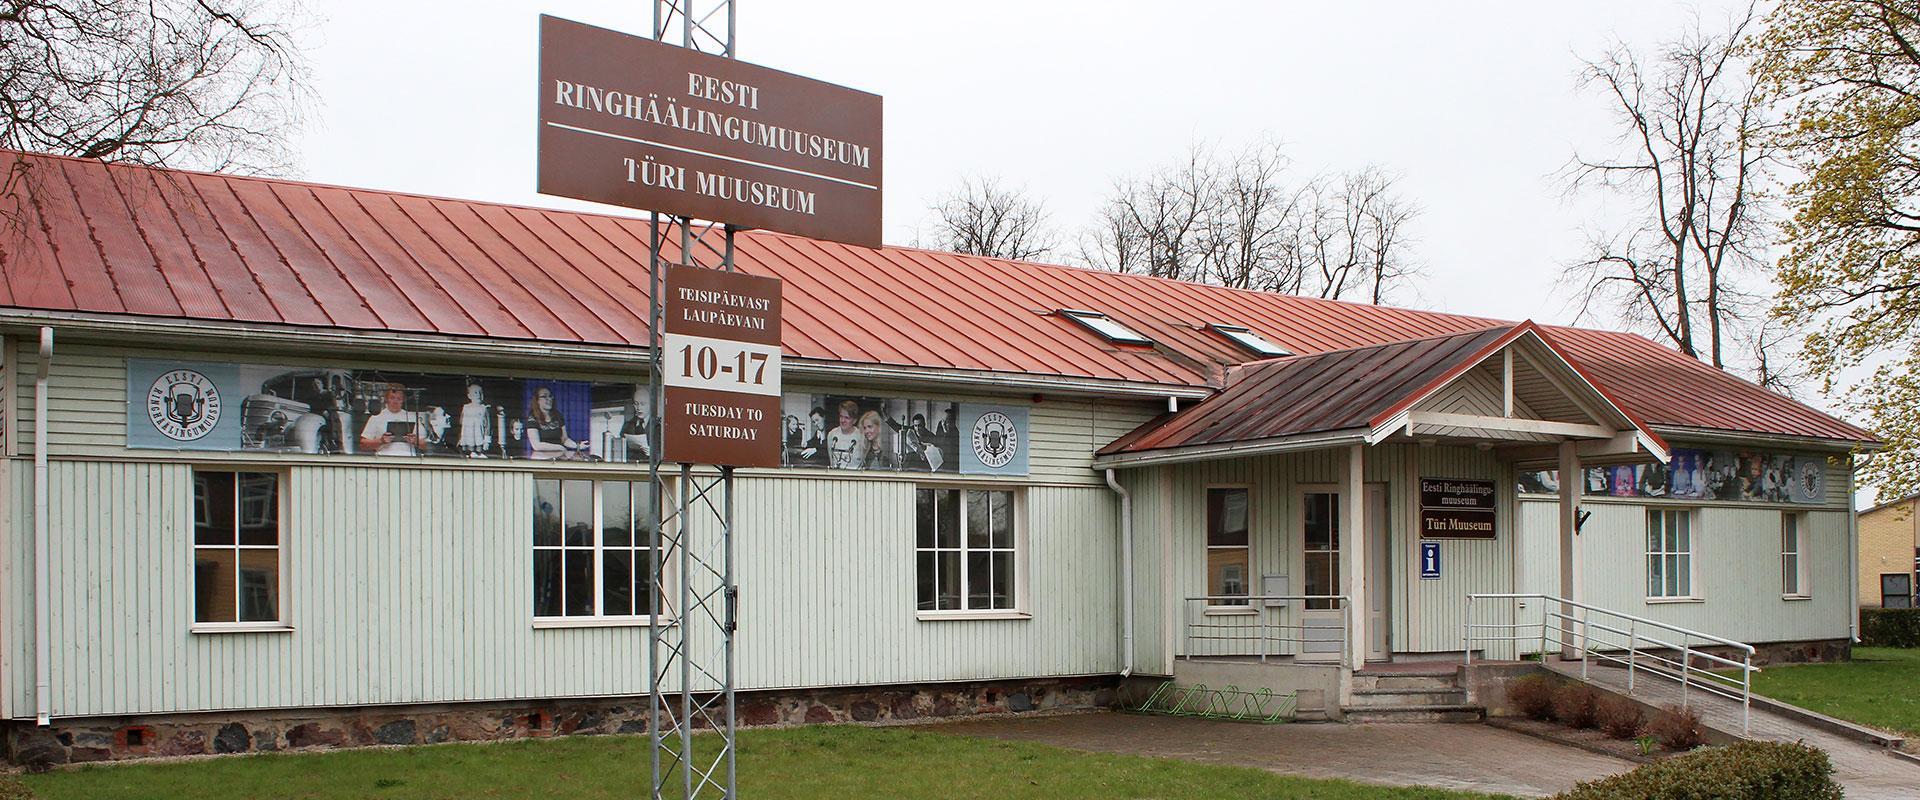 Eesti Ringhäälingumuuseum